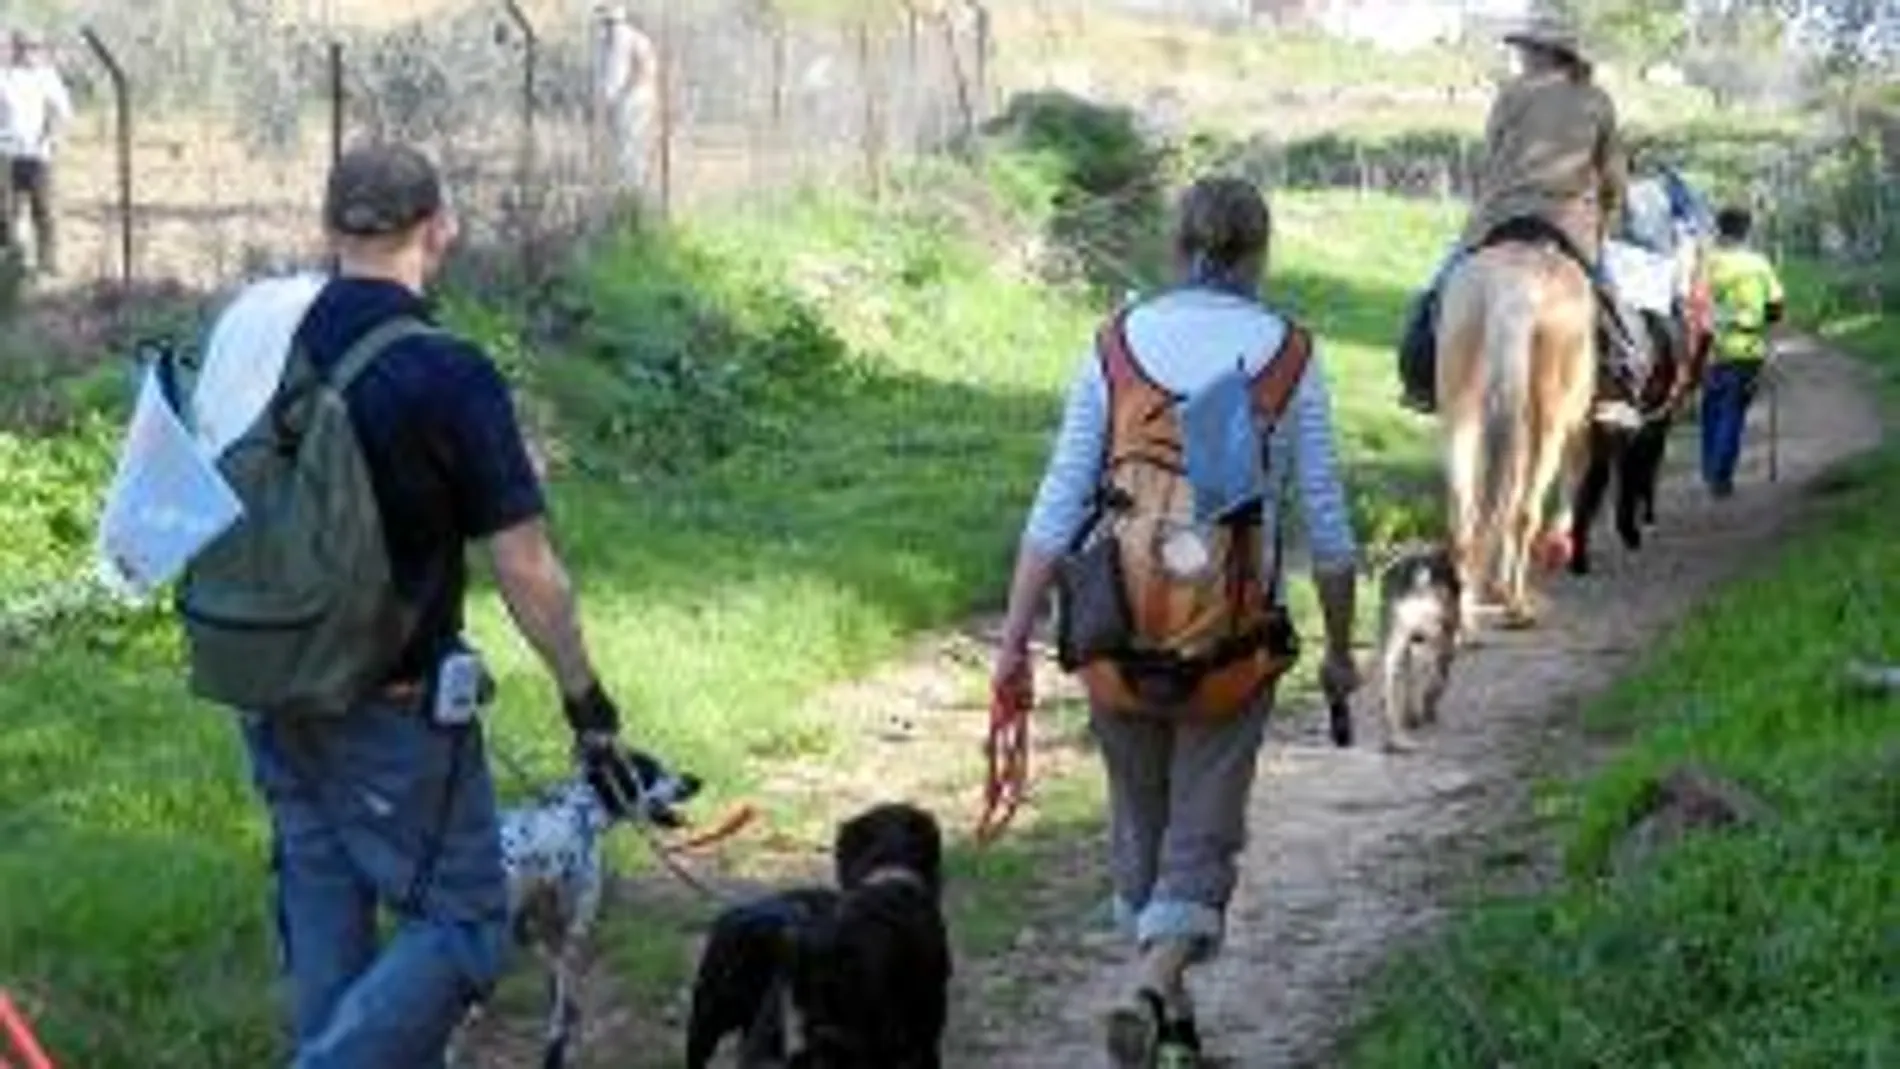 A pesar de las dificultades que se han encontrado, los animales y sus dueños están dispuestos a llegar juntos a Compostela